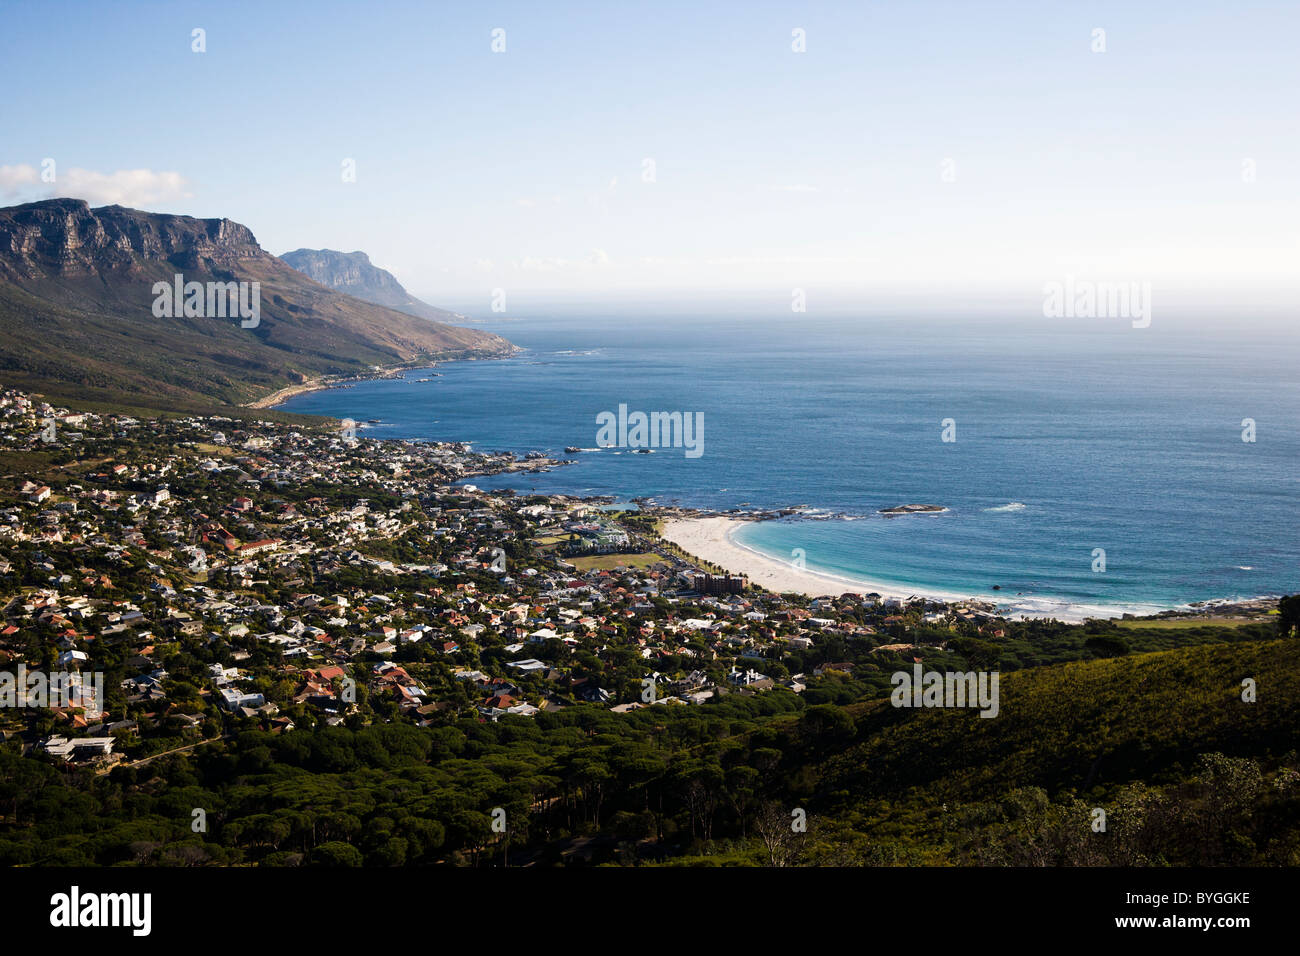 Vista de la ciudad costera de montañas en segundo plano. Foto de stock